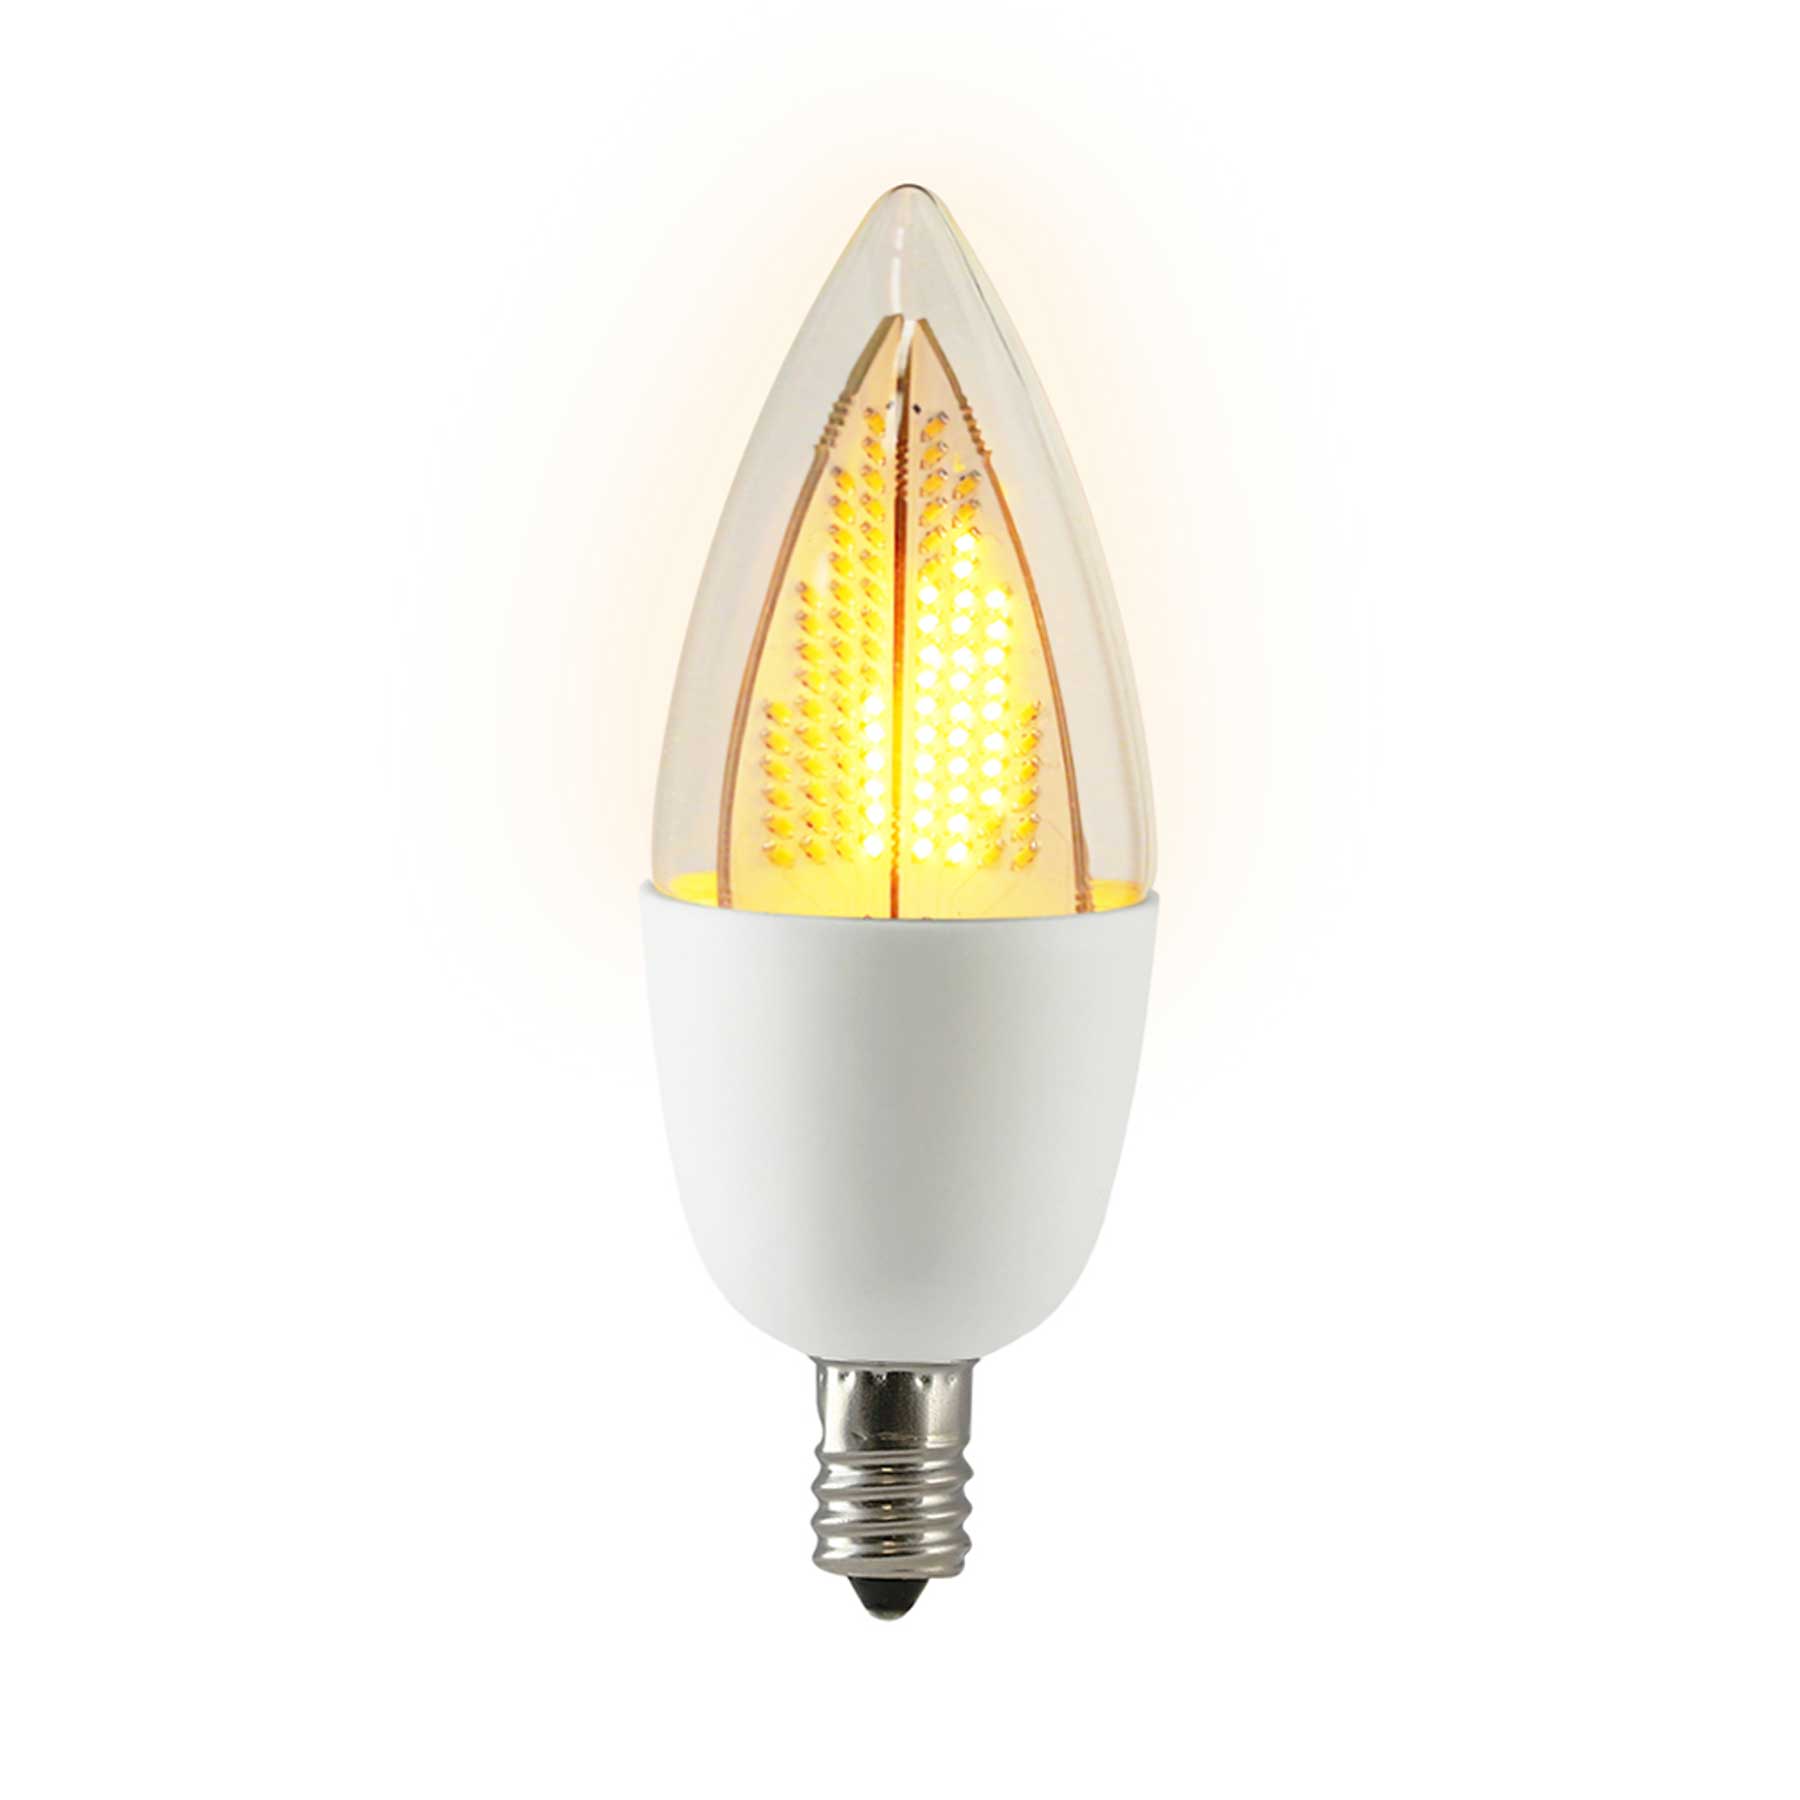 Ambassadeur maximaal Ruwe slaap Candelabra Flame 1800K Flicker LED Light Bulb, White Base